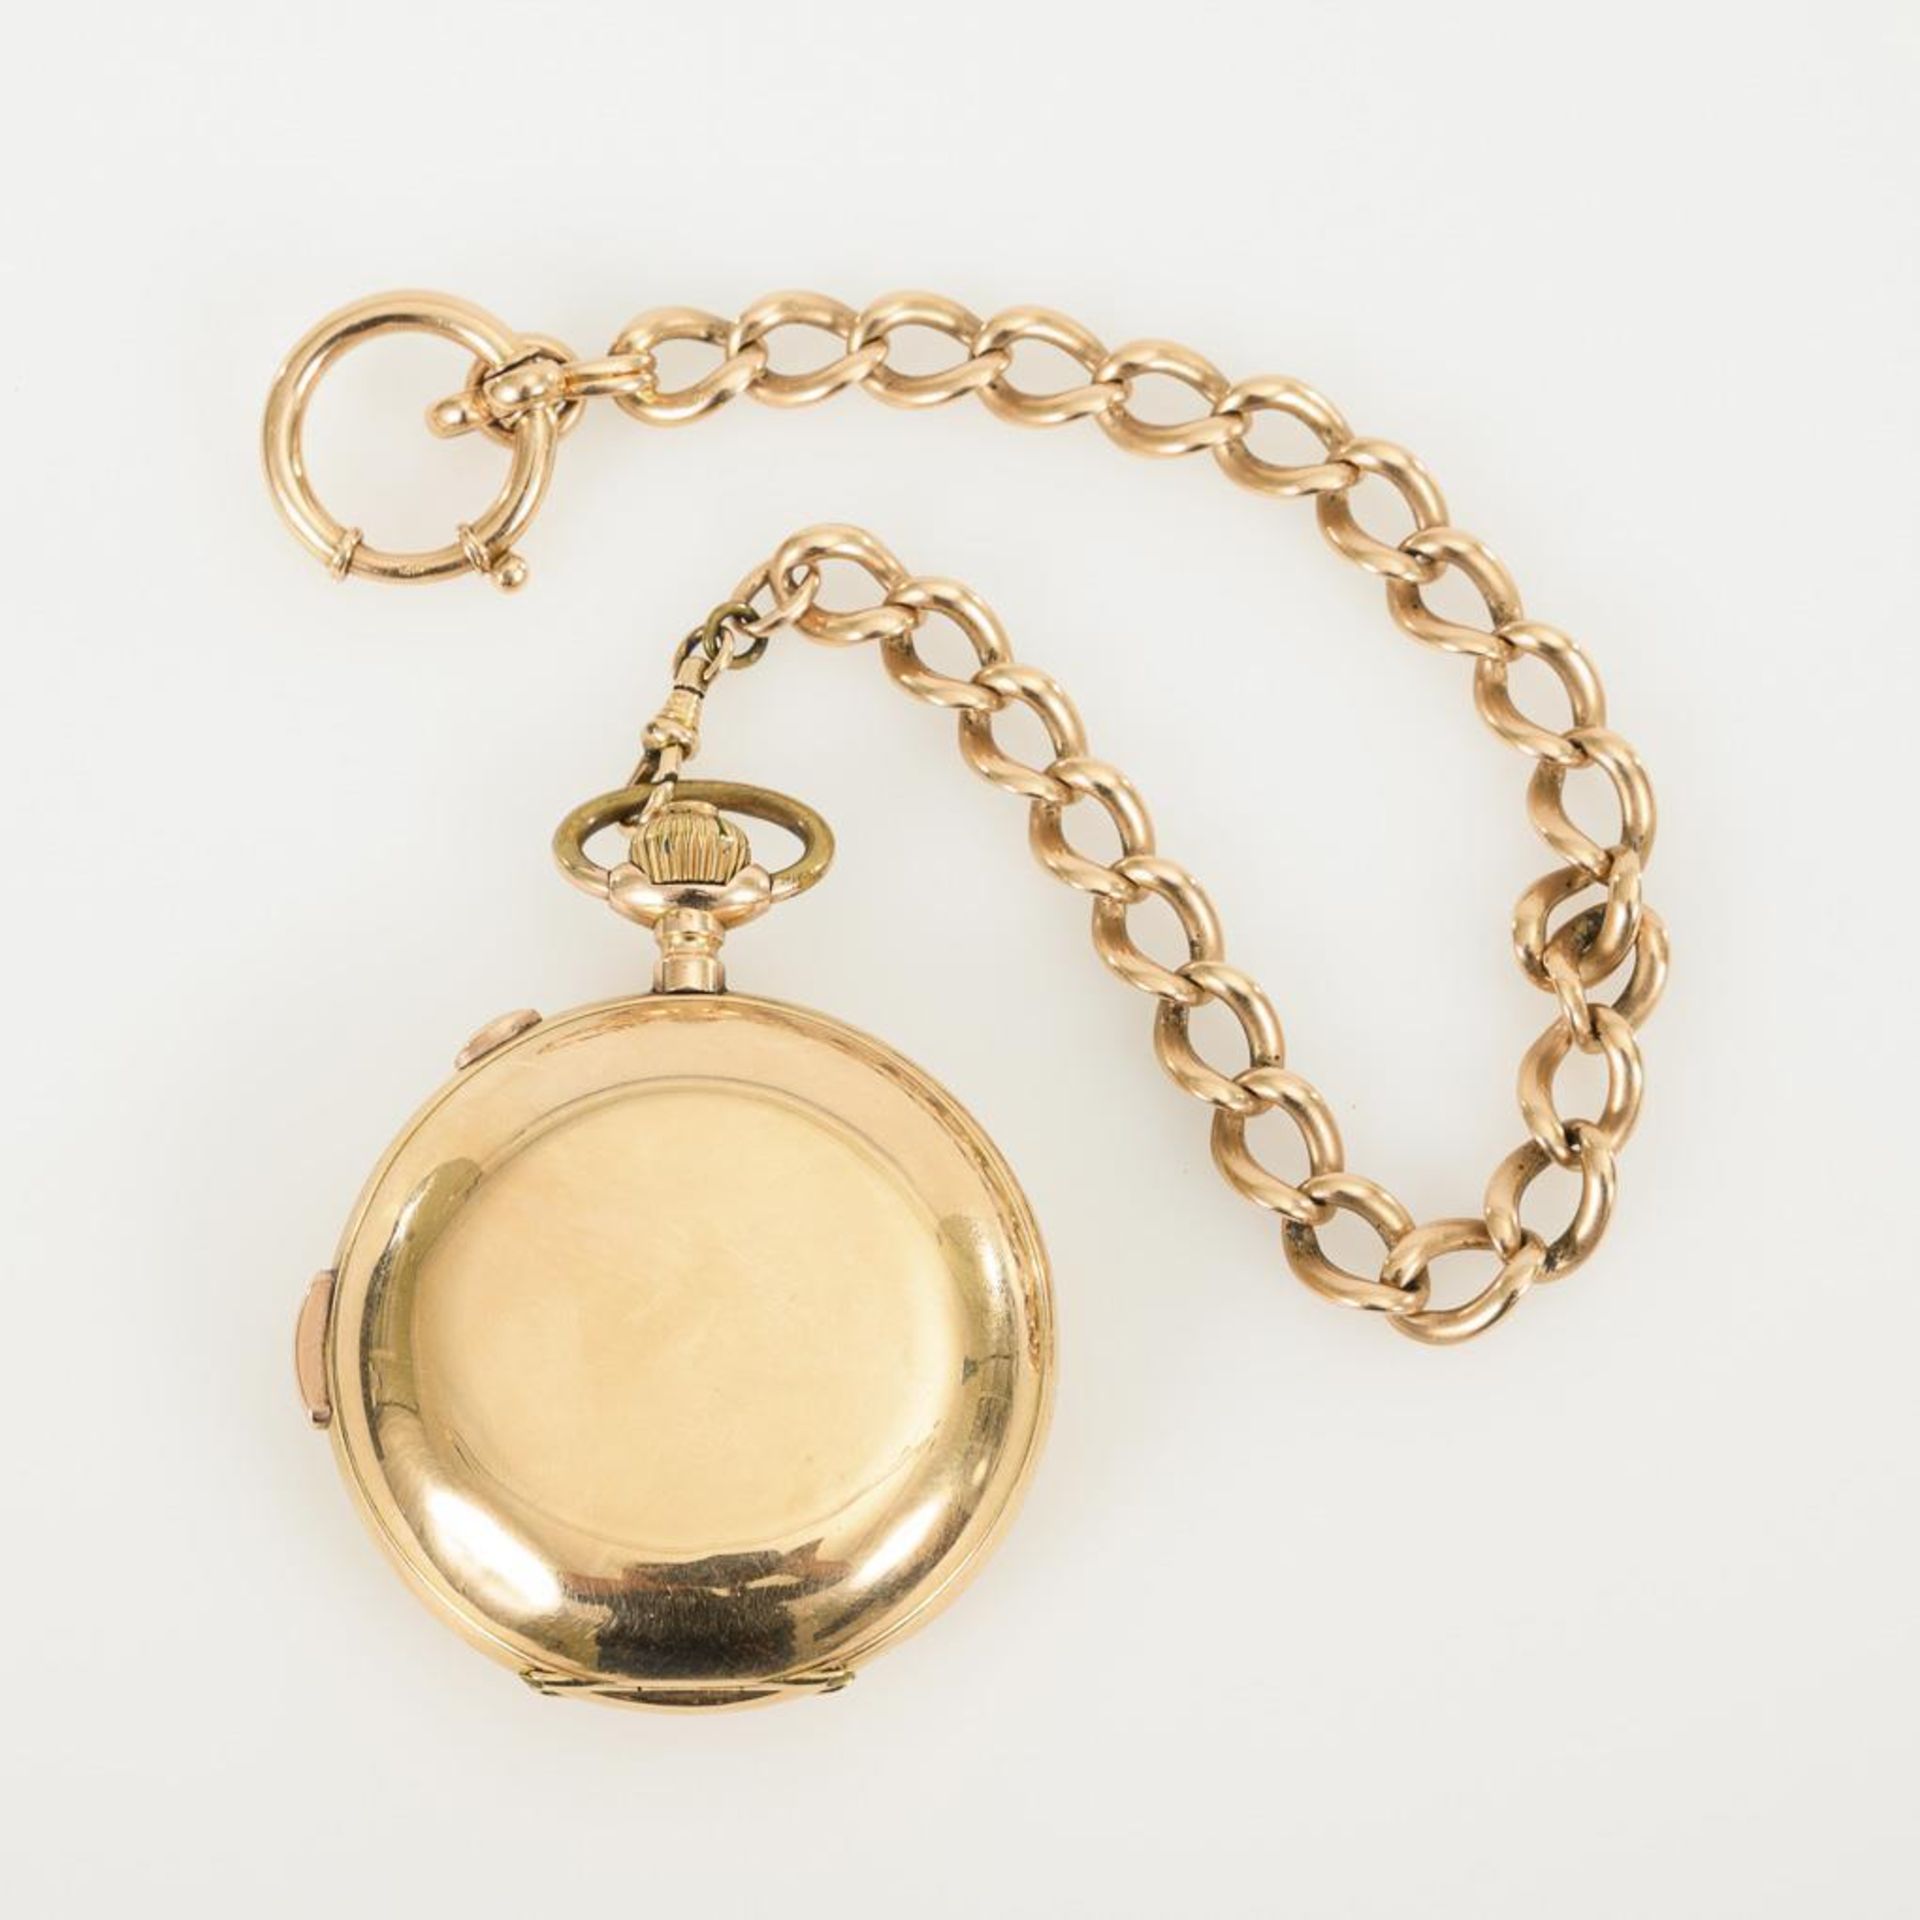 Goldene Savonnette mit Minutenrepetition und Chronograph an goldener Uhrenkette. - Image 2 of 5